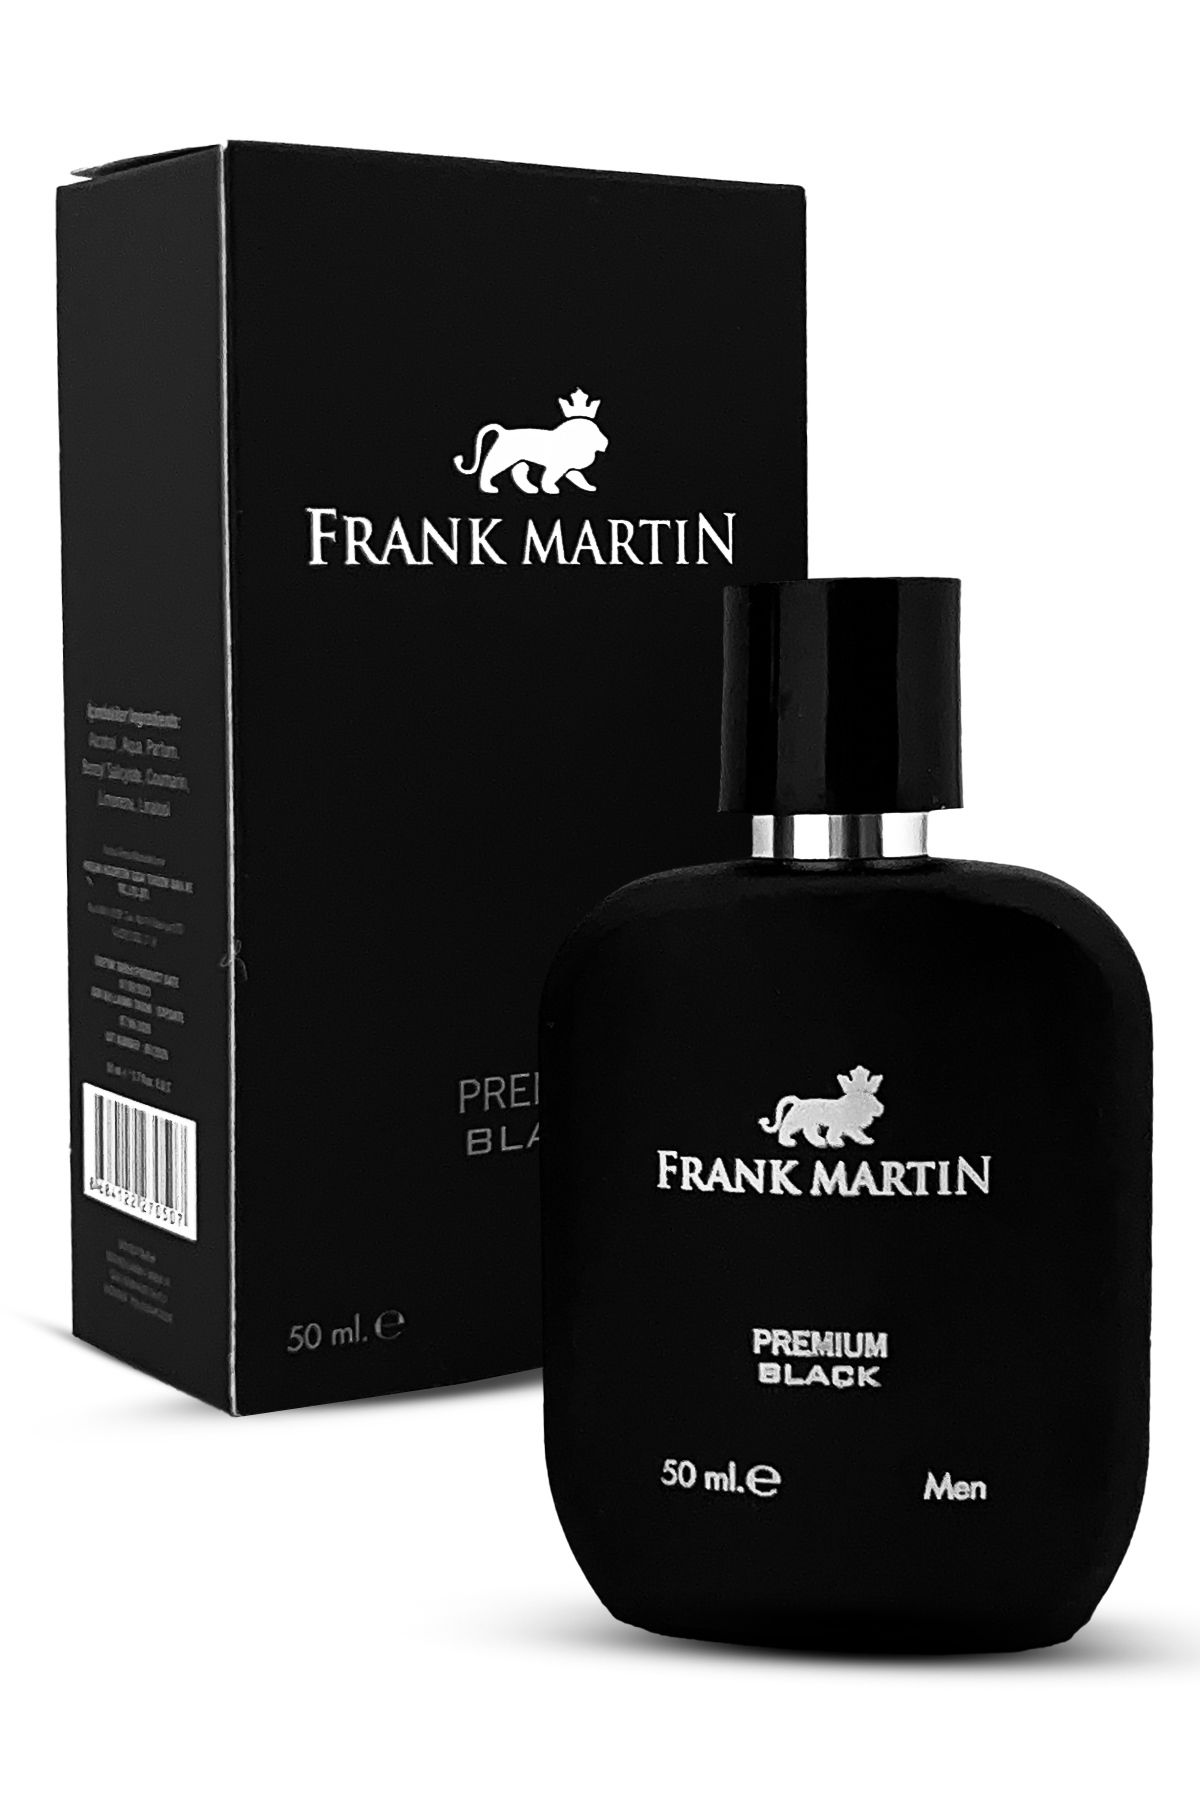 Frank Martin Orijinal Men Black Premium Özel Seri Uzun Süre Kalıcı Etkili Lüks Erkek Parfüm 50ml 130-001